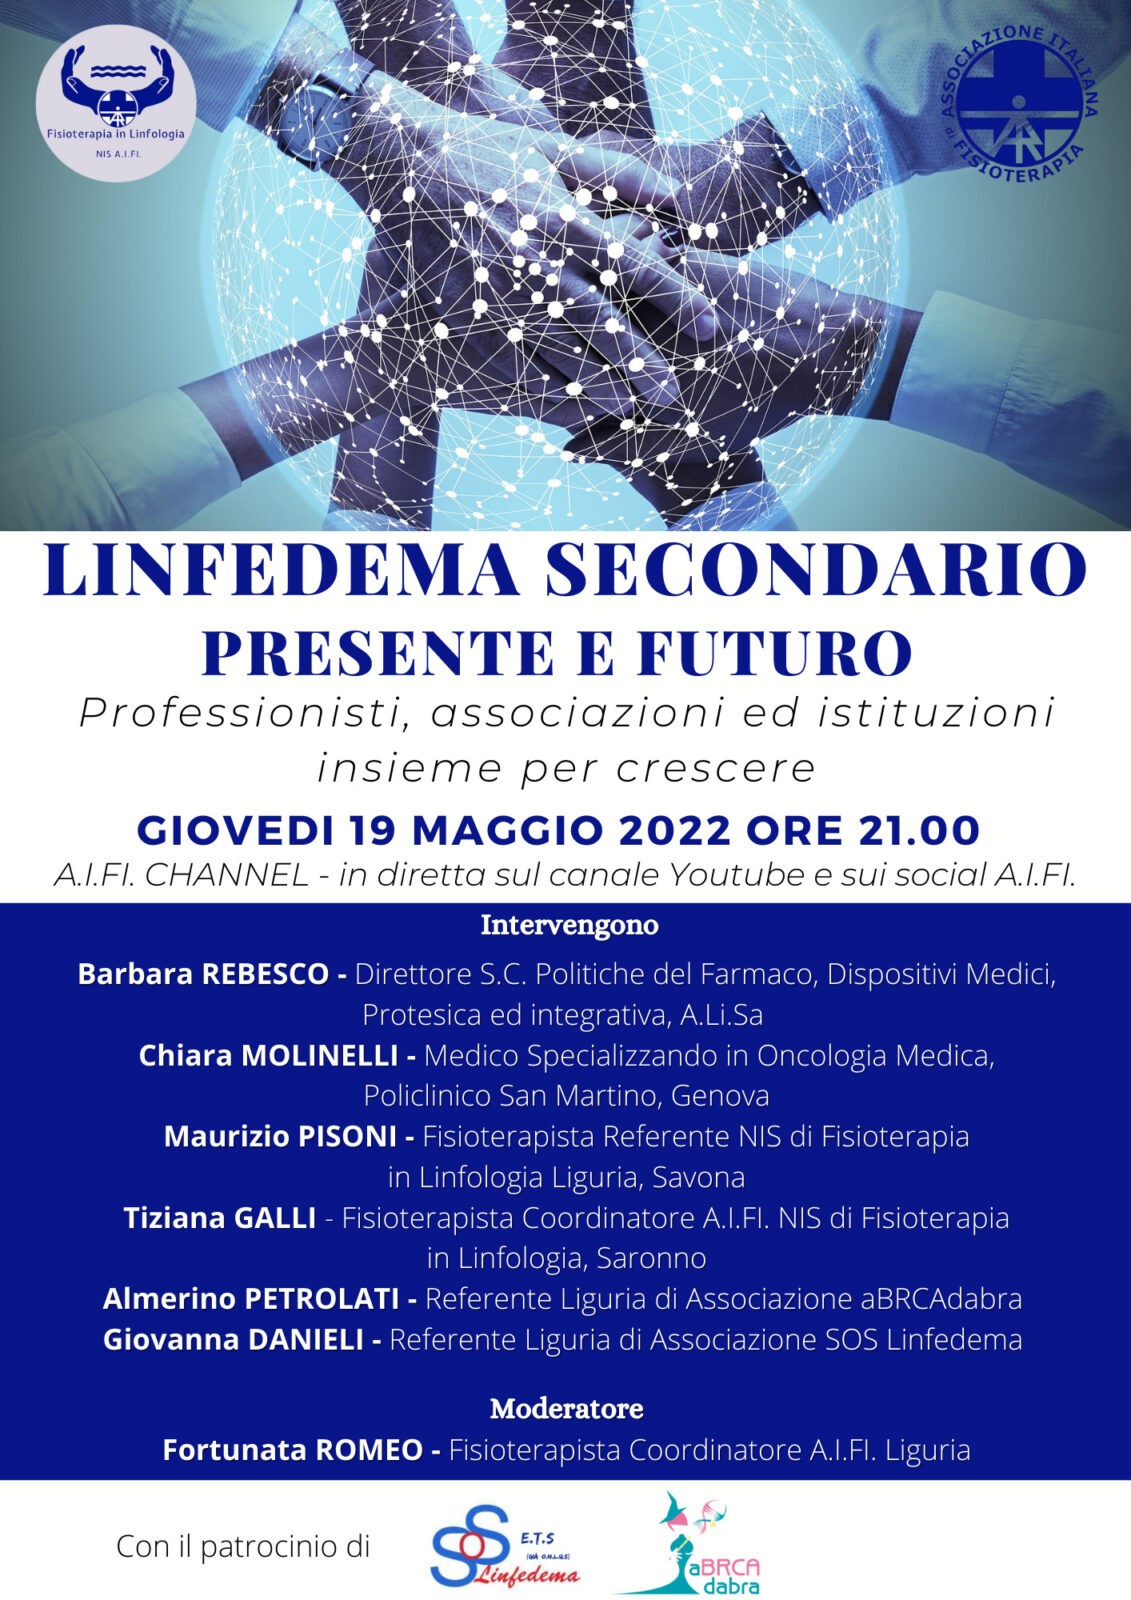 Linfedema secondario: presente e futuro, 19 maggio 2022